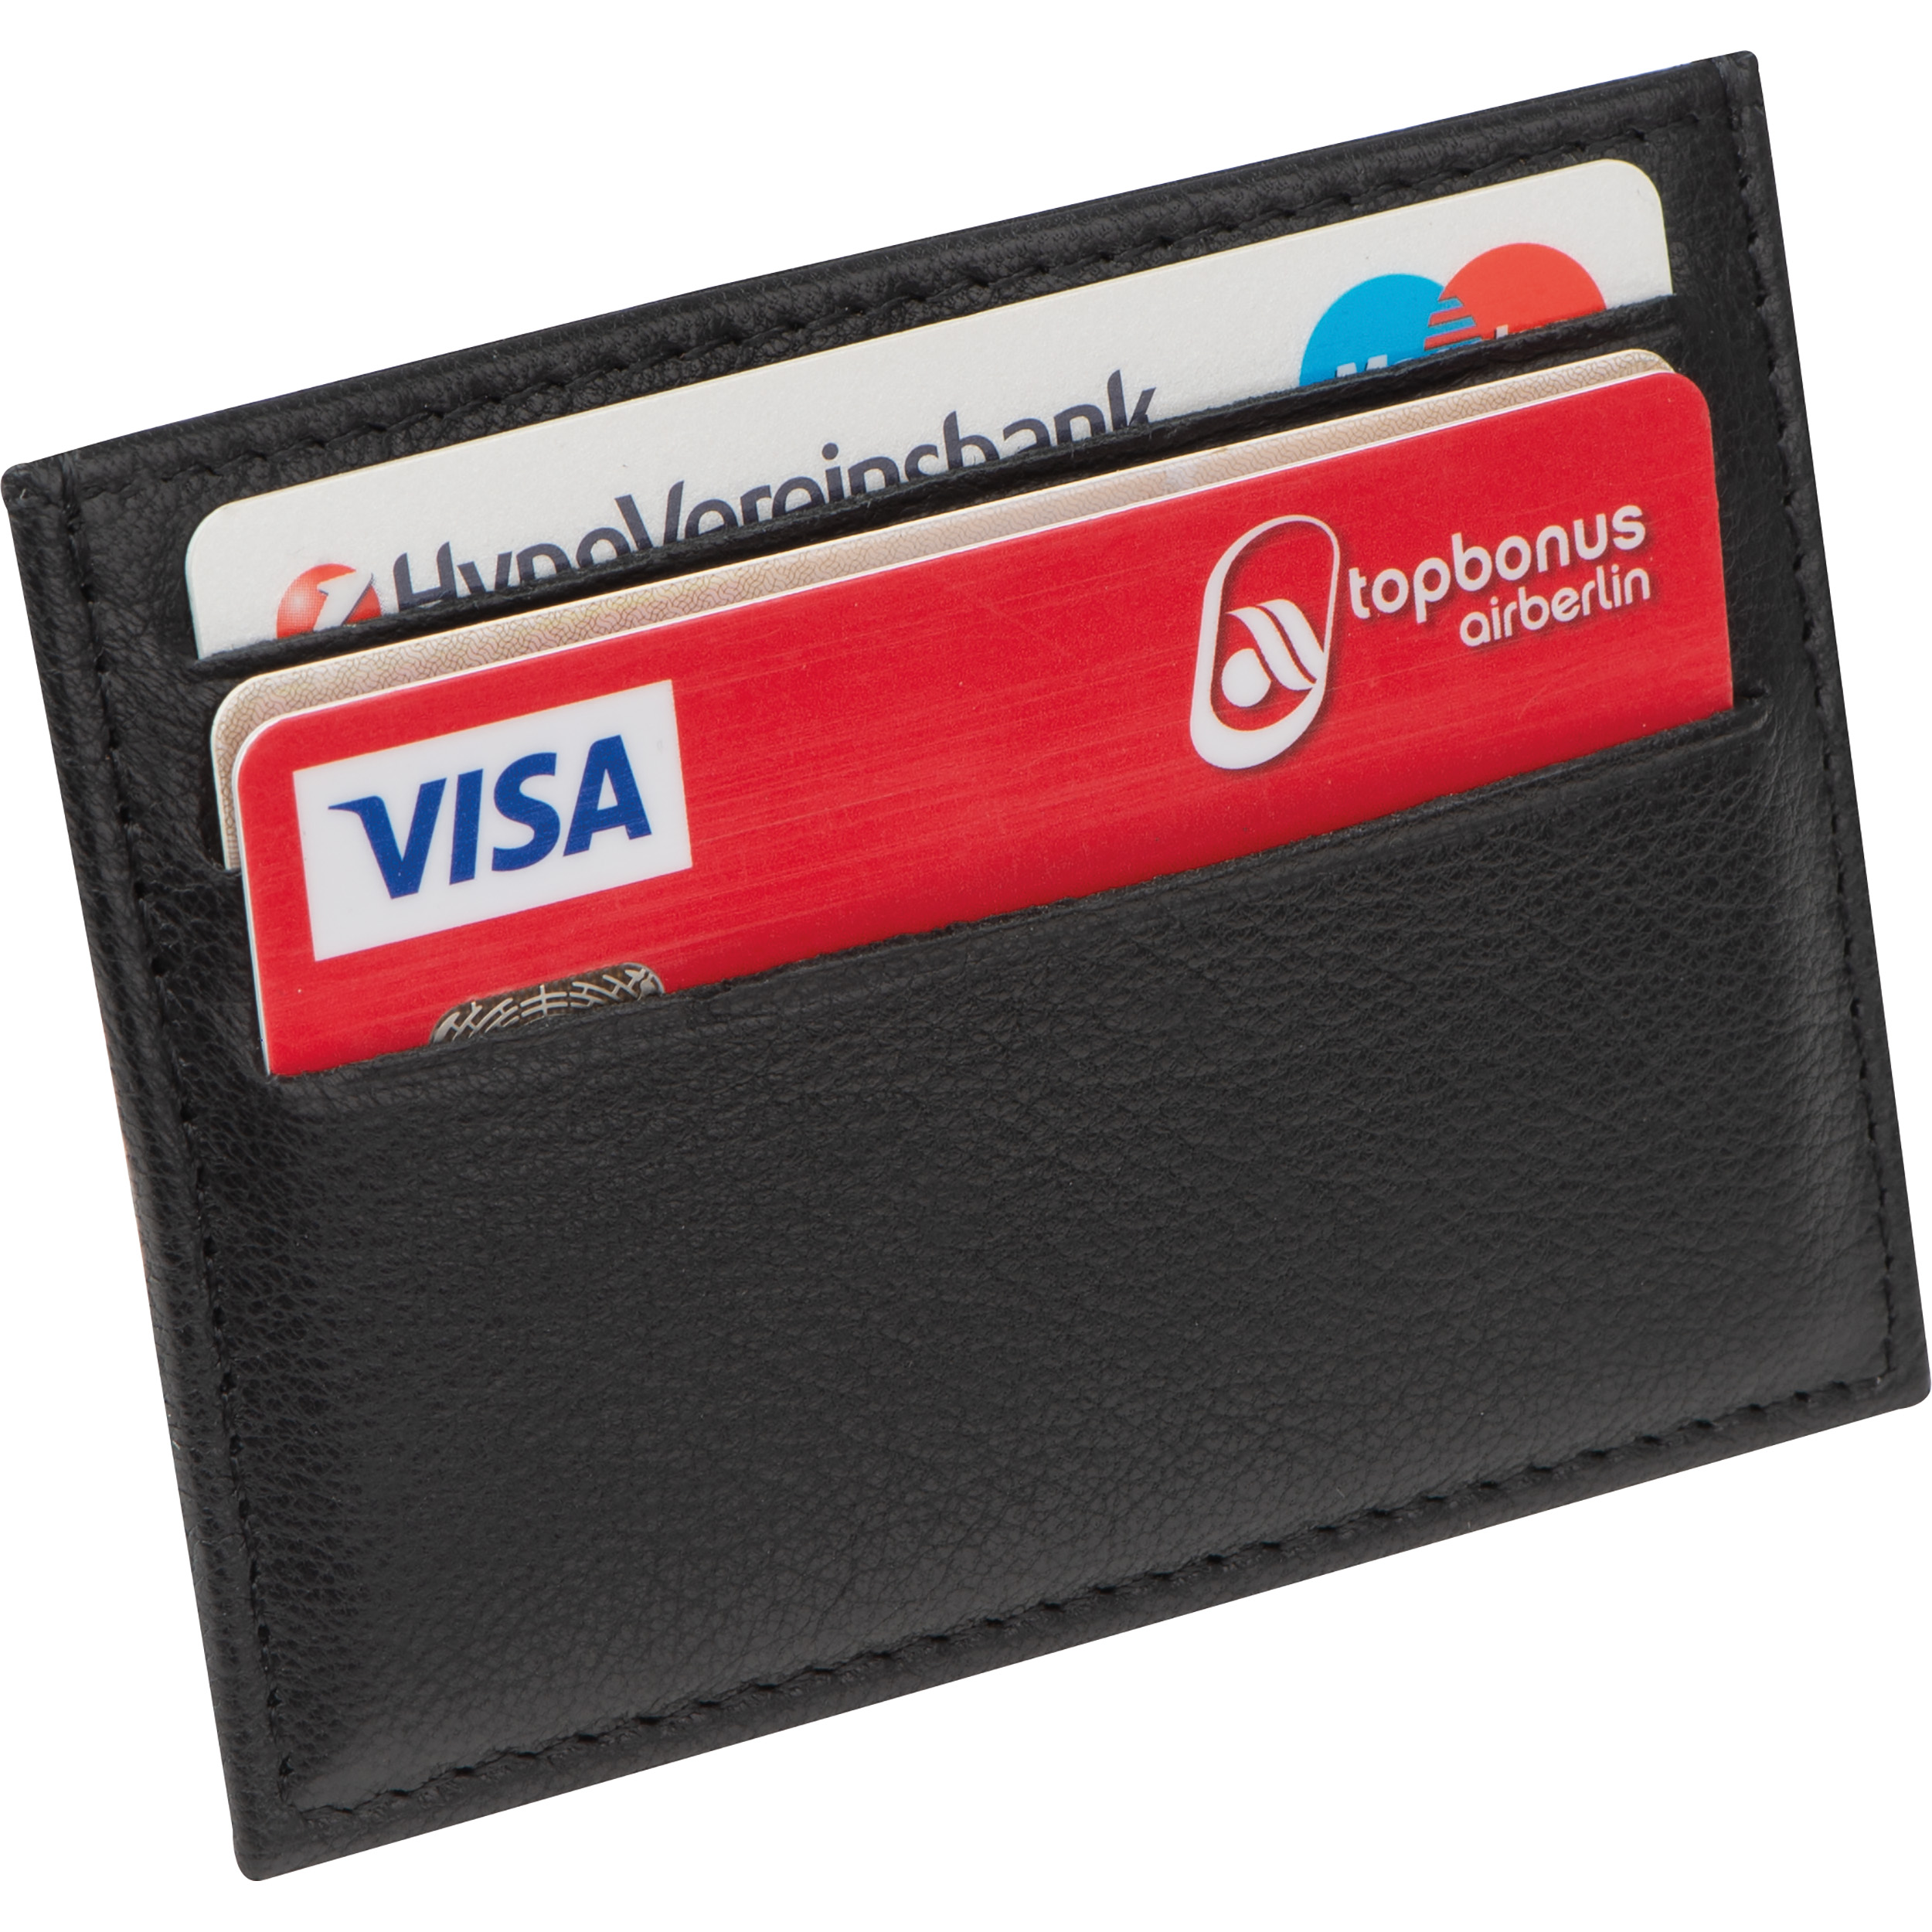 RFID Kreditkartenetui aus Leder